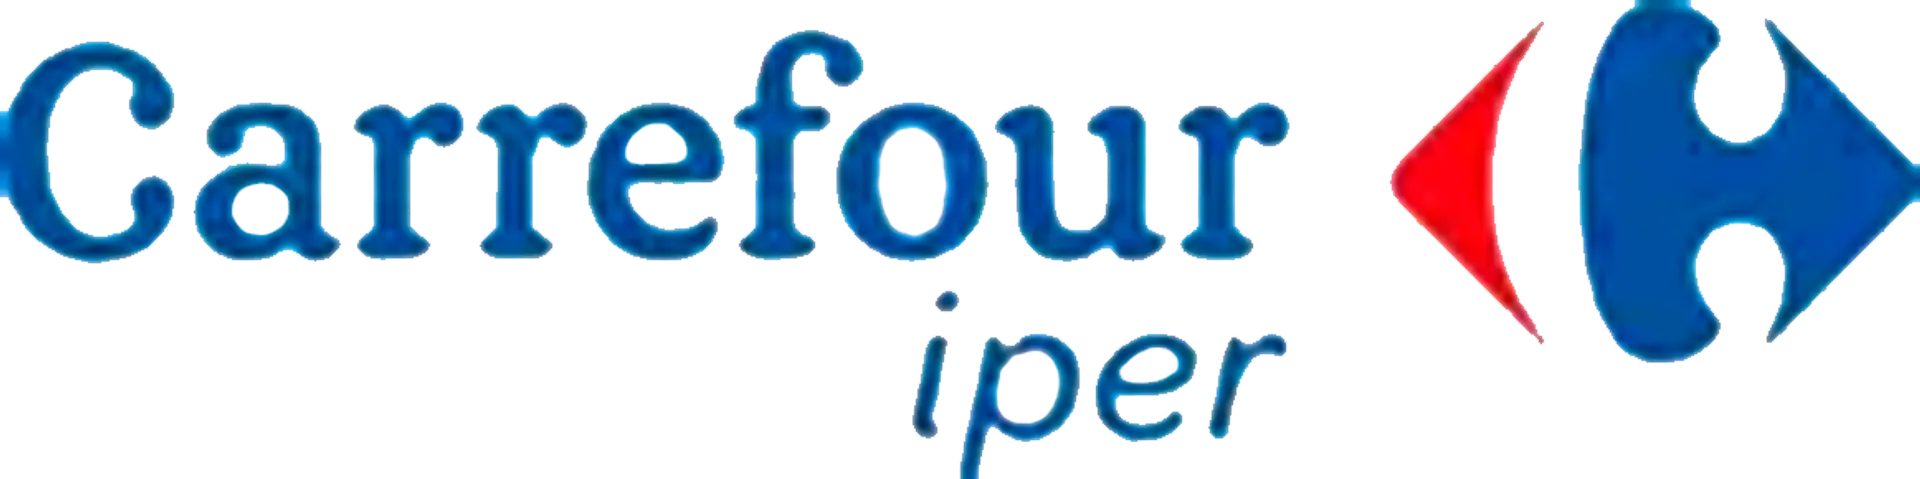 Carrefour Iper logo del volantino attuale